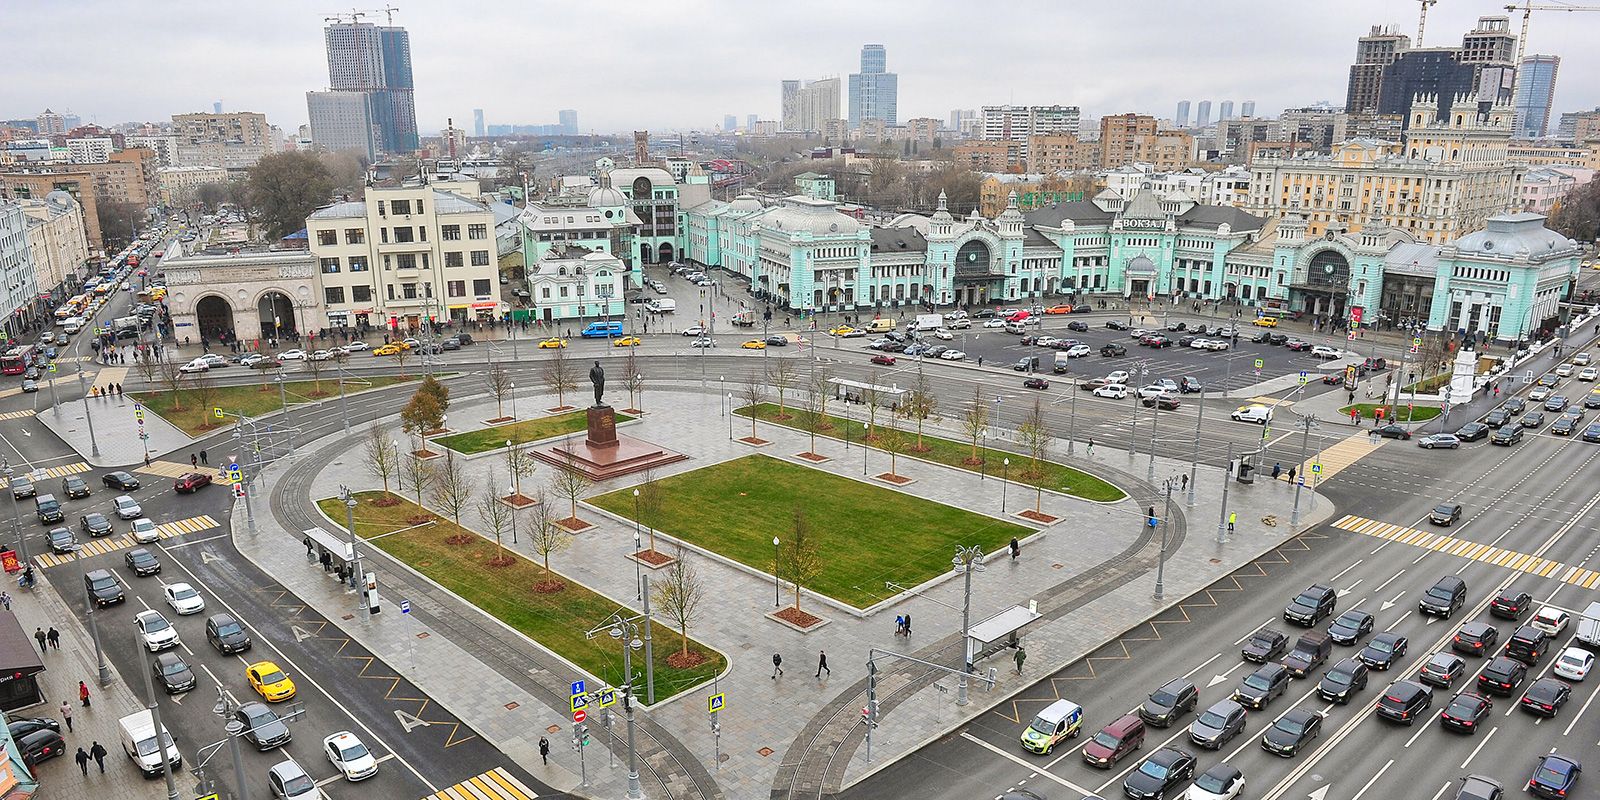 У 2005-му пам'ятник зняли з постаменту і перевезли до парку мистецтв «Музеон» через плани зі зміни схеми руху на площі, але в 2017-му вирішили повернути назад